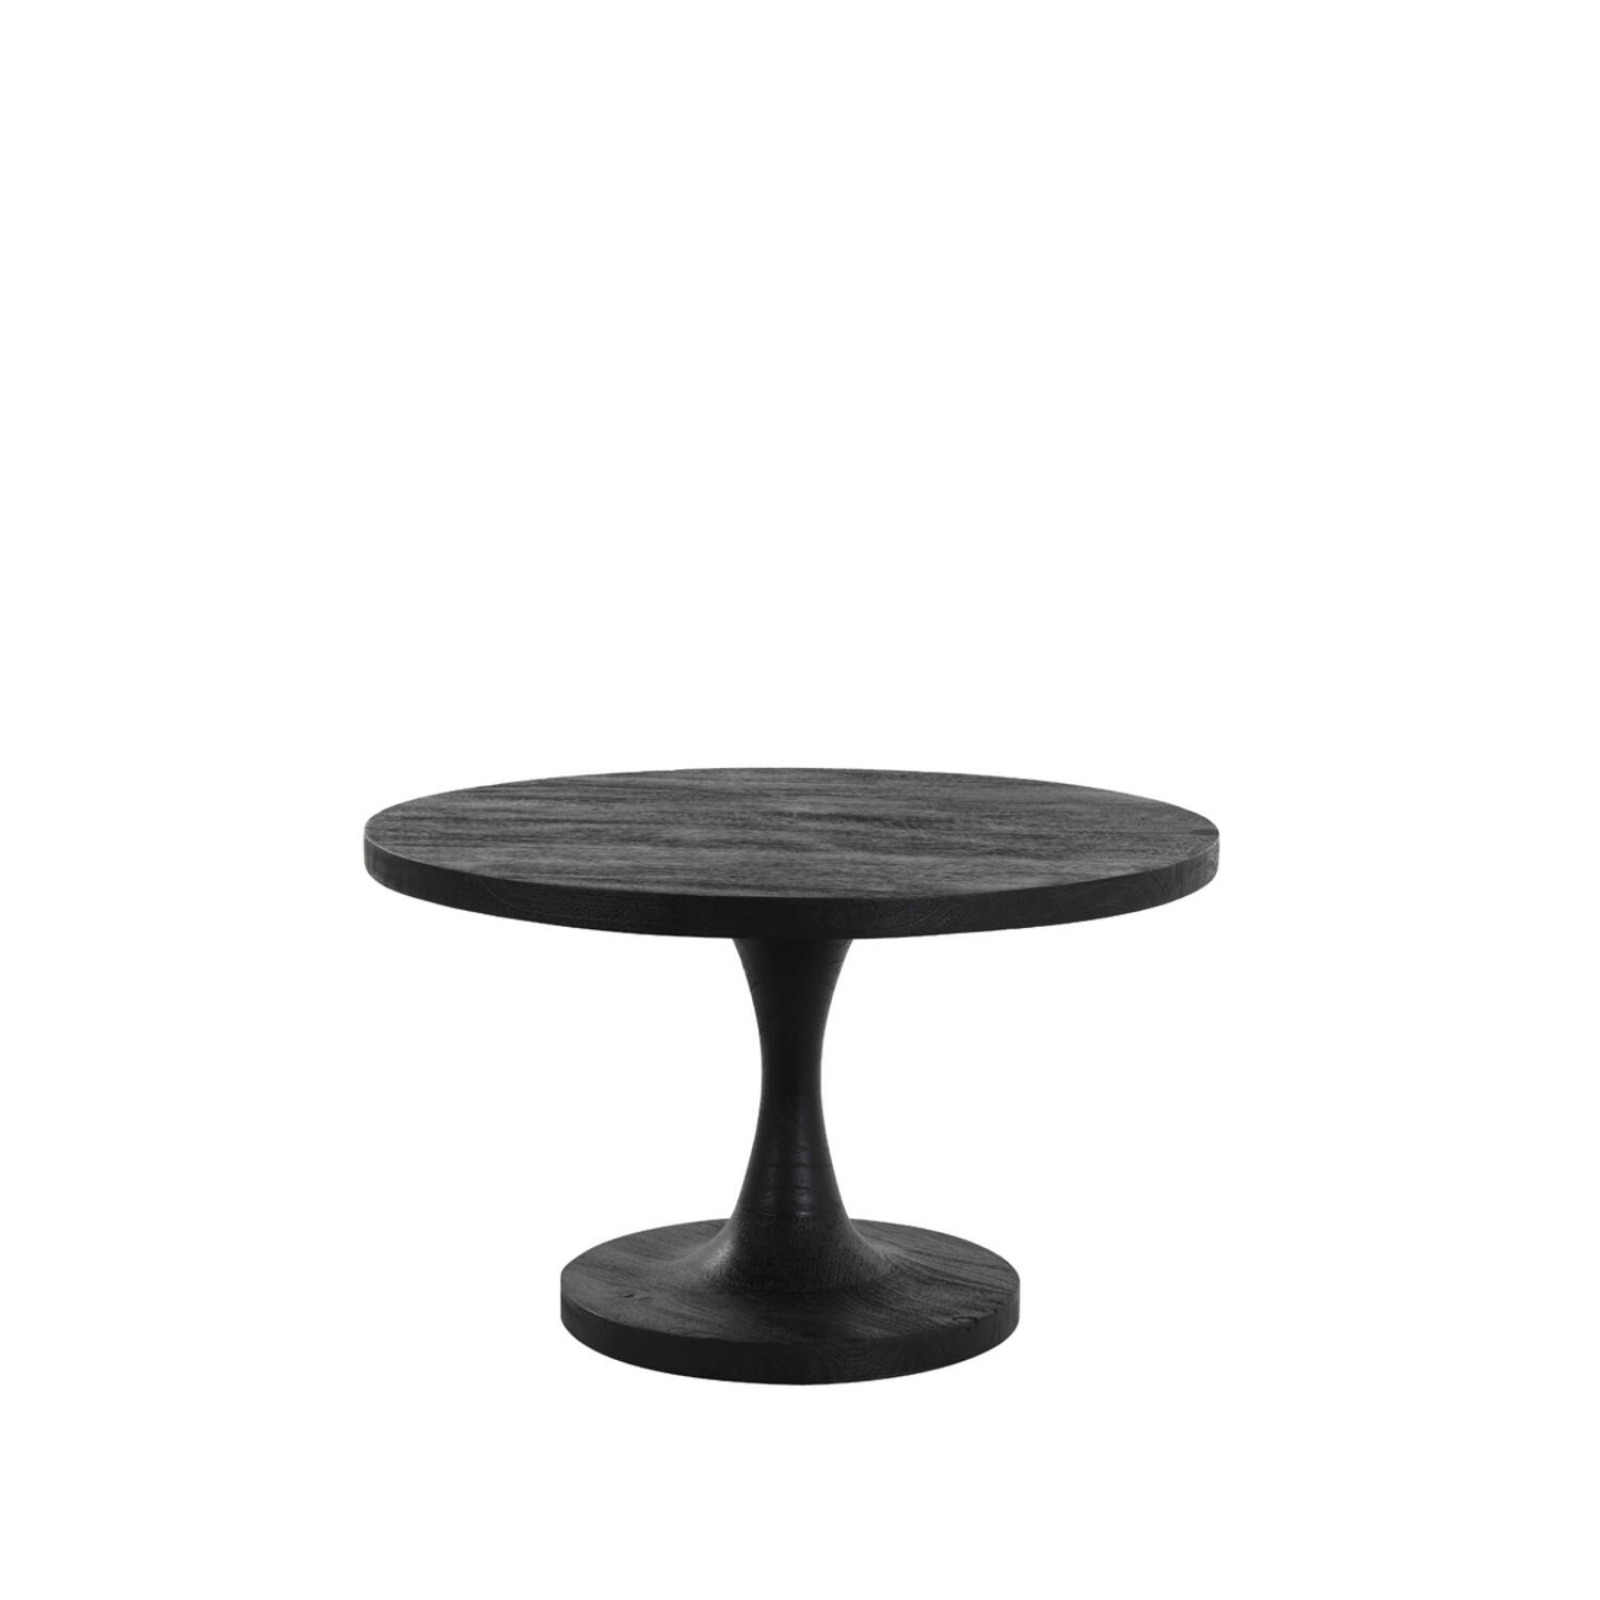 Bicaba Black side table S